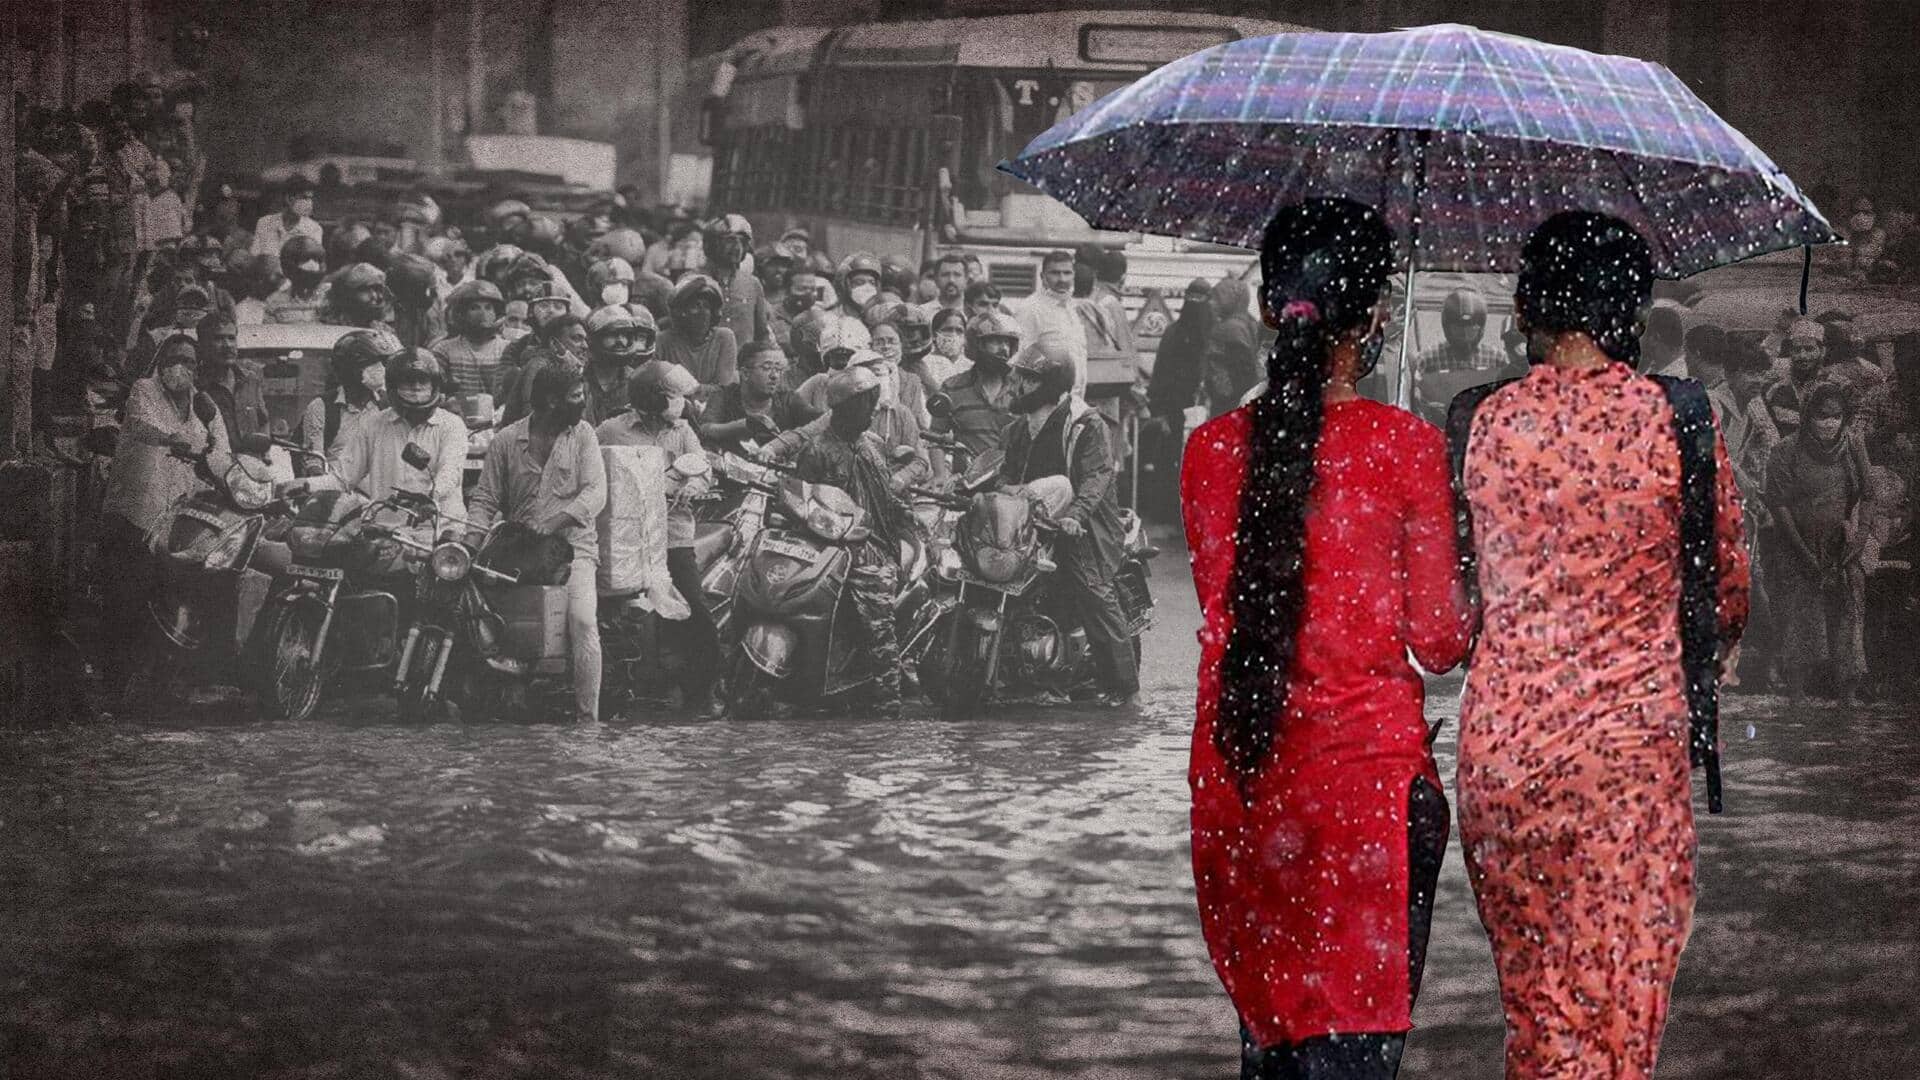 उत्तर भारत में भारी बारिश से कई मौतें, दिल्ली में अधिकारियों की छुट्टी रद्द 